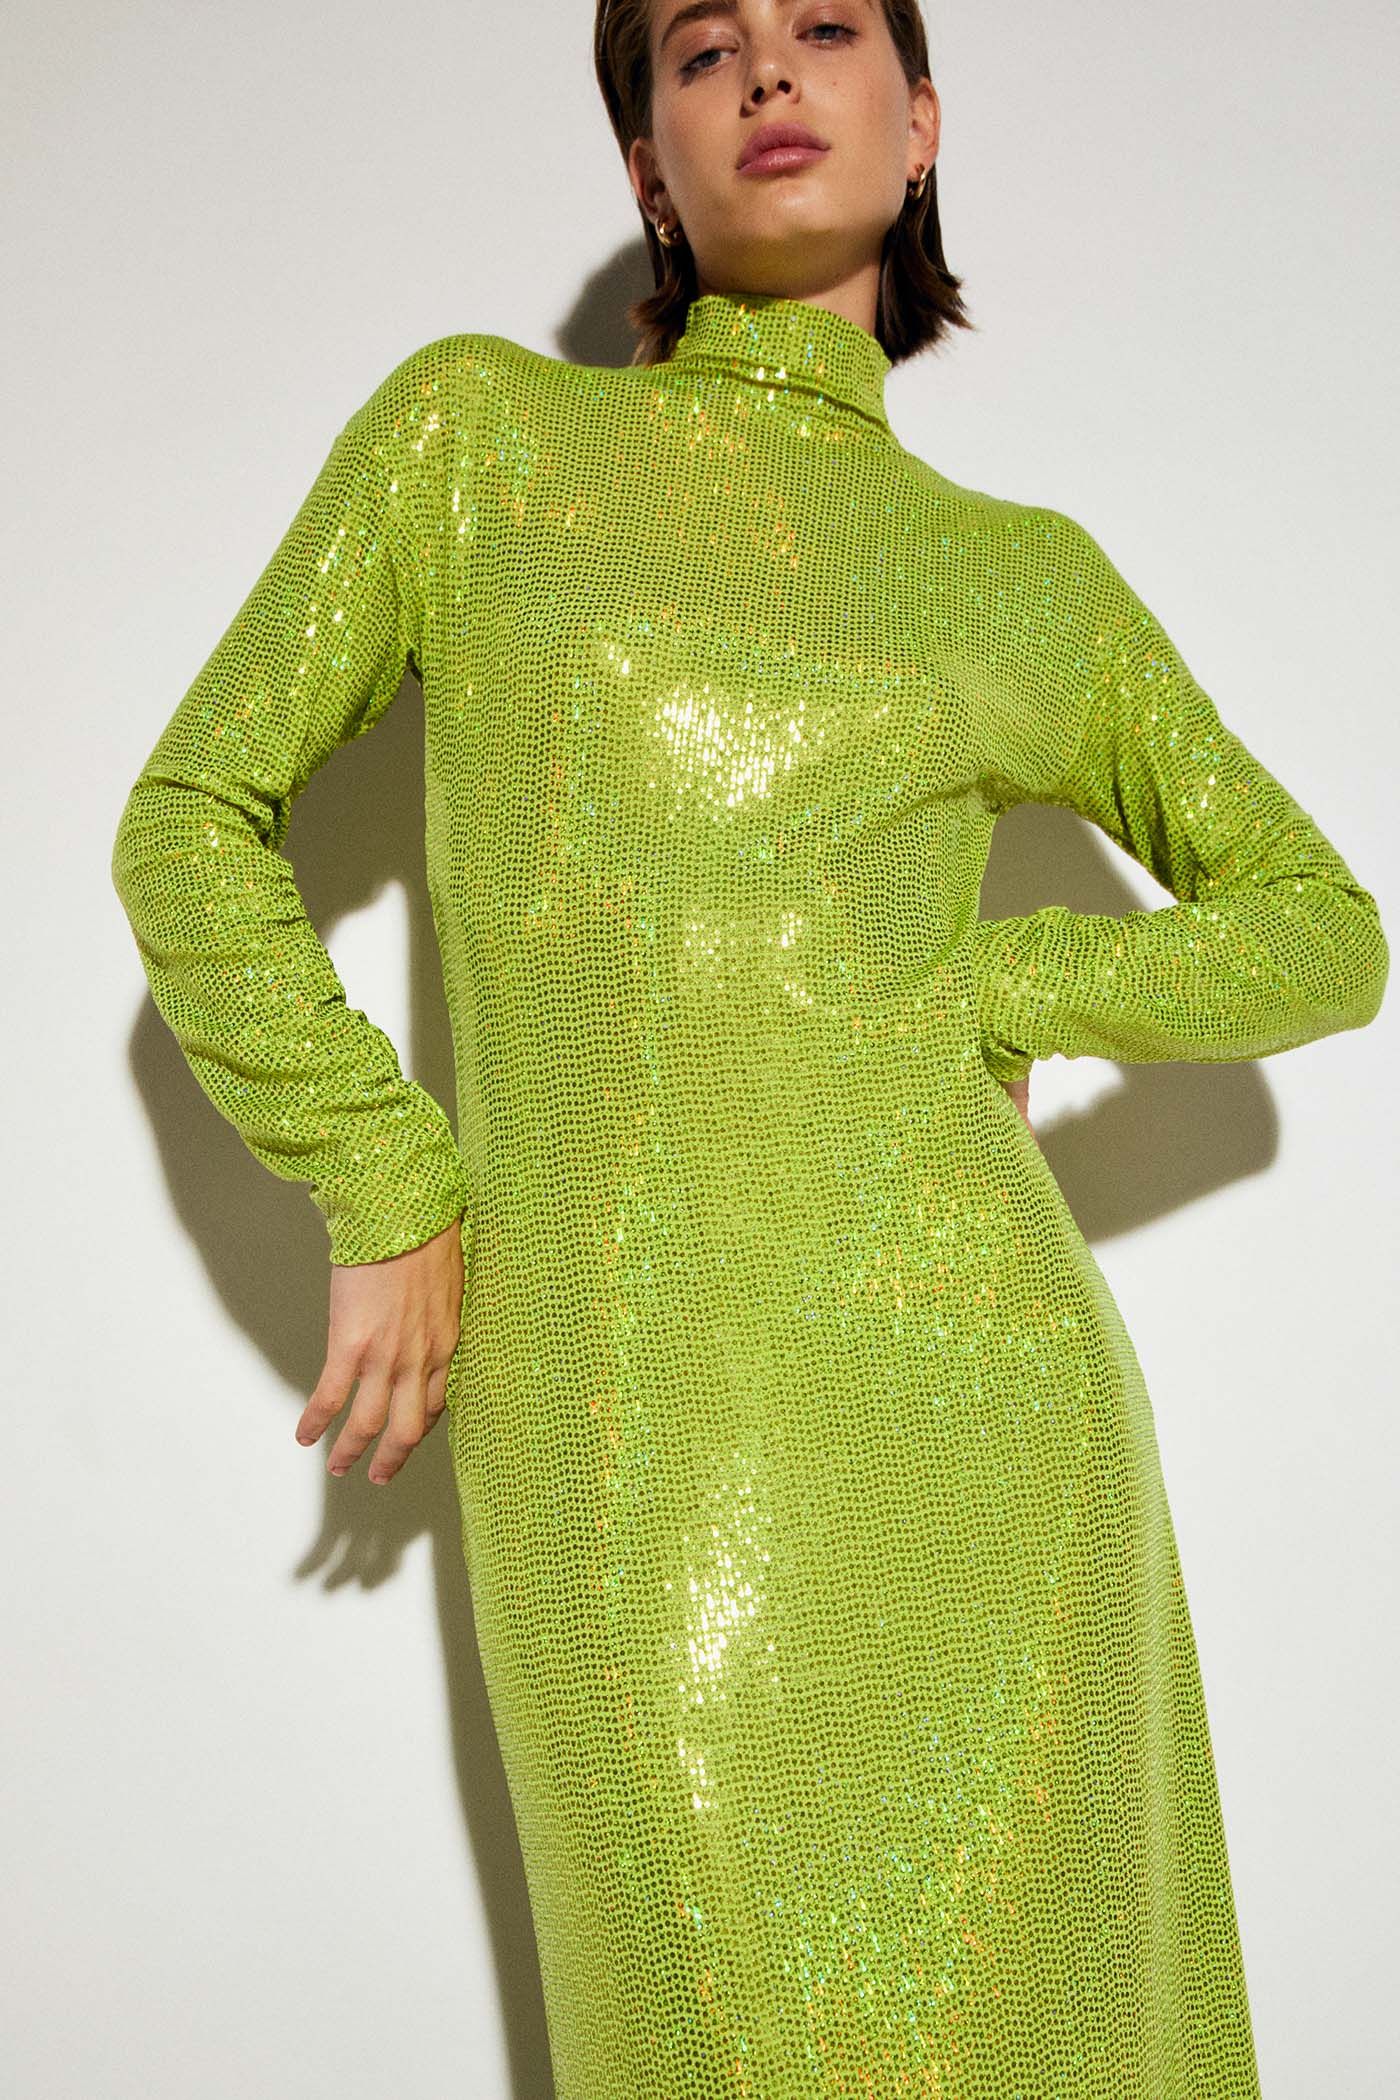 completar Novela de suspenso Fácil de suceder El vestido brillante verde de Sfera más viral